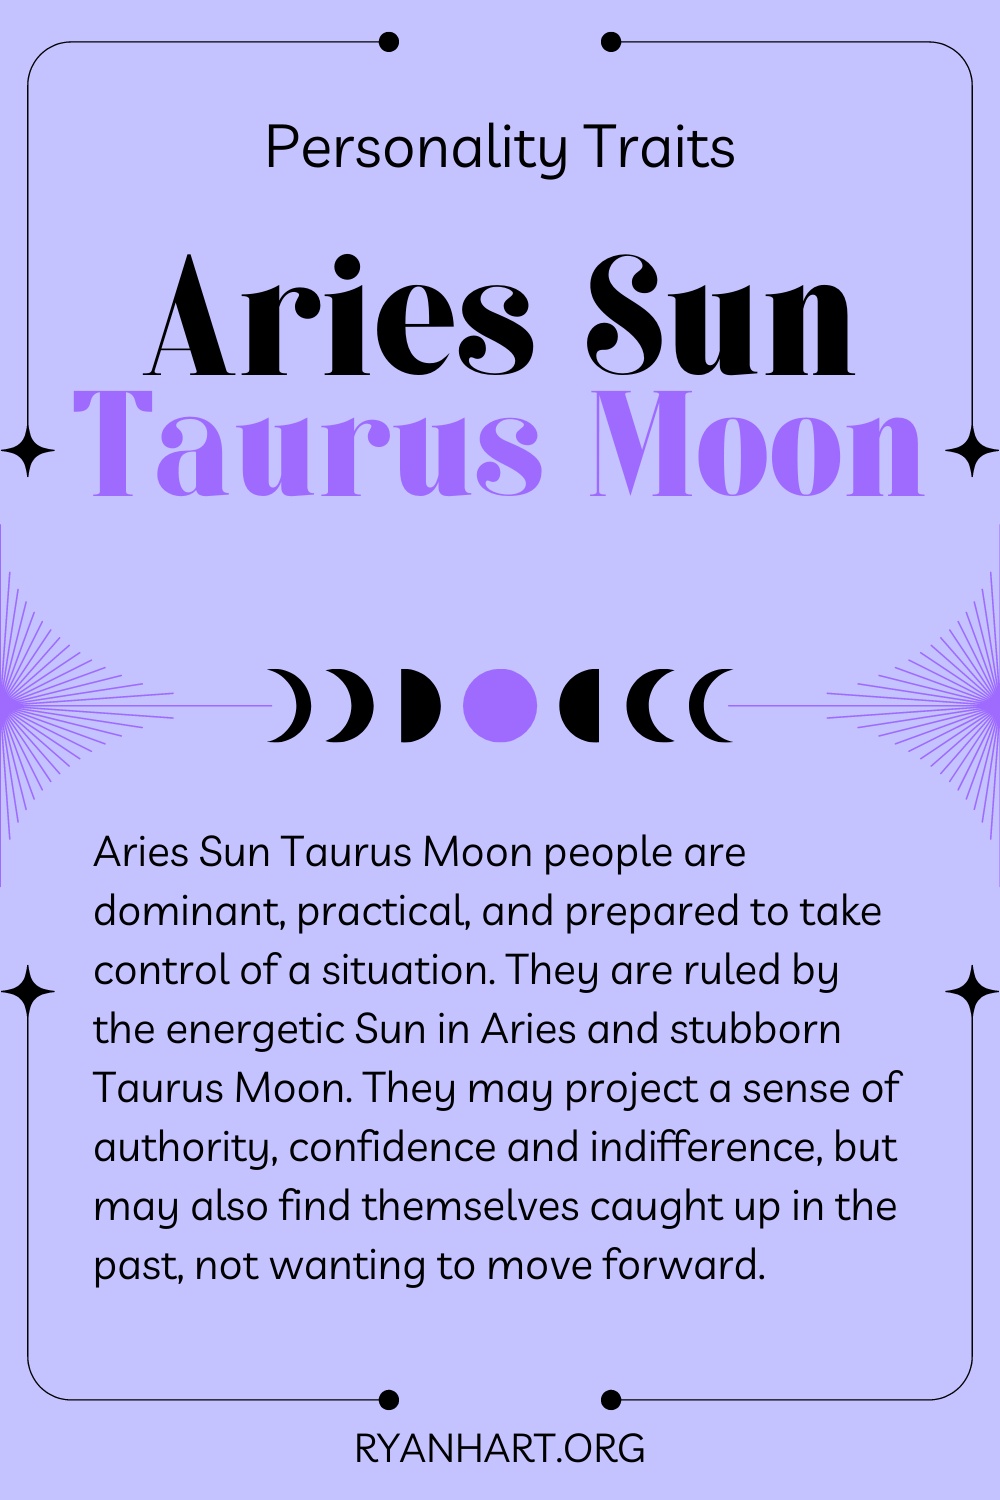  Κριός Ήλιος Ταύρος Σελήνη Χαρακτηριστικά Προσωπικότητας